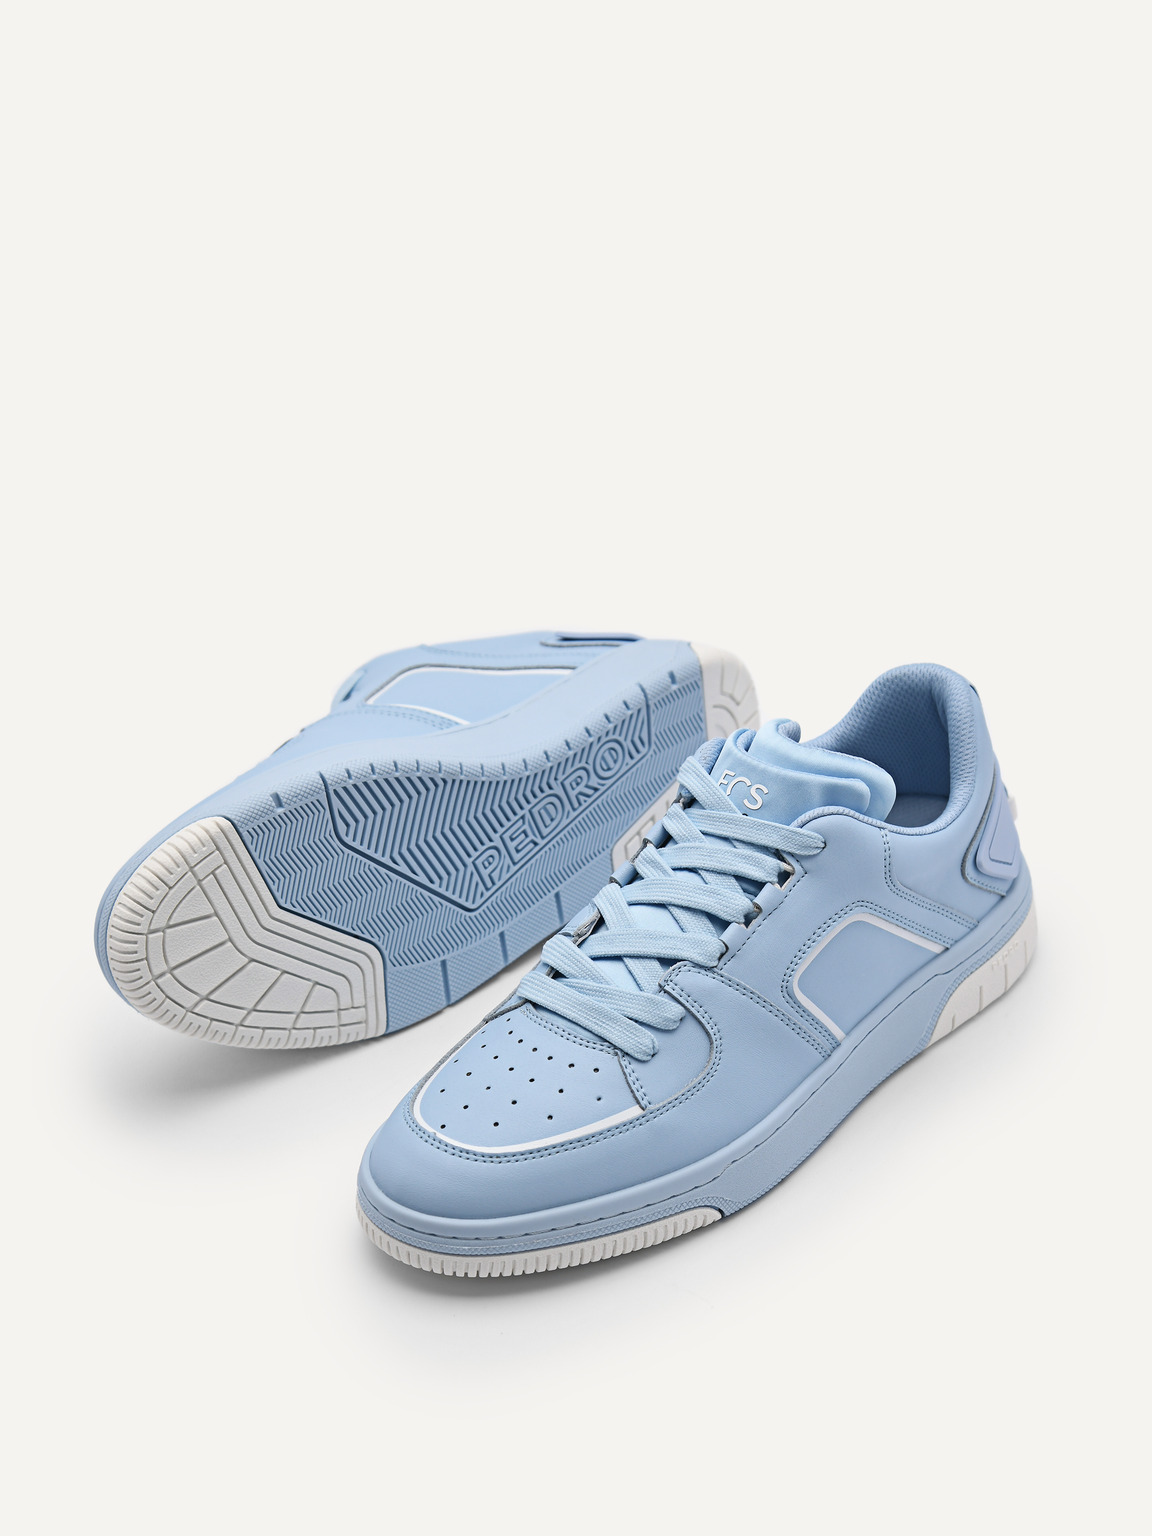 Women's EOS Sneakers, Light Blue